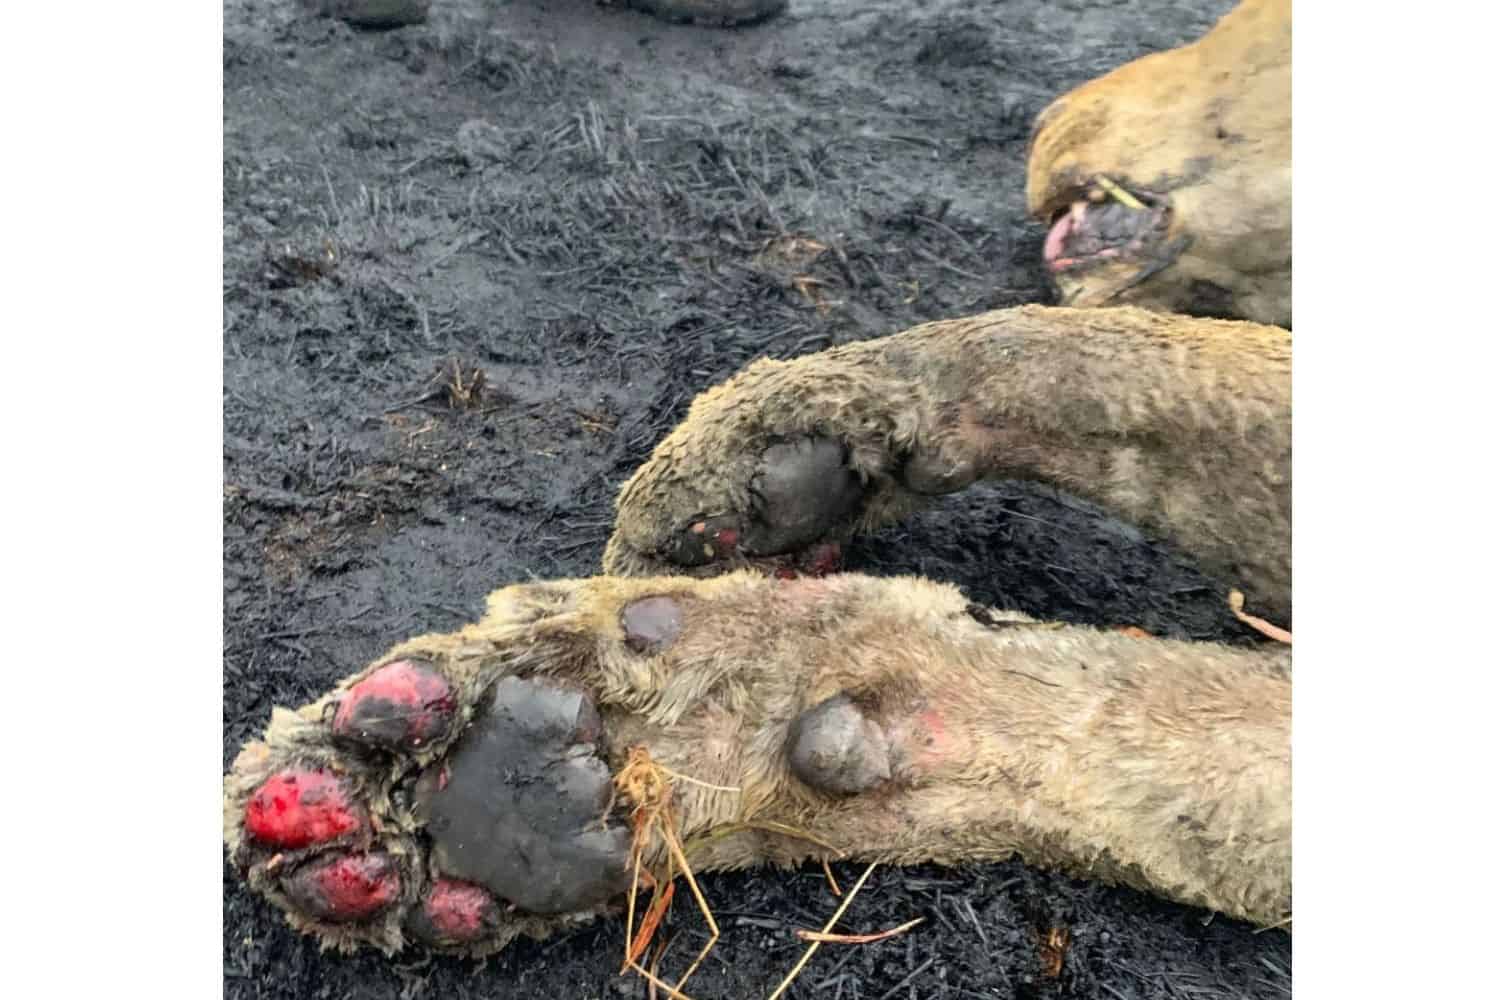 Leeuwen verbrand in FS-branden hebben SPCA-dampen